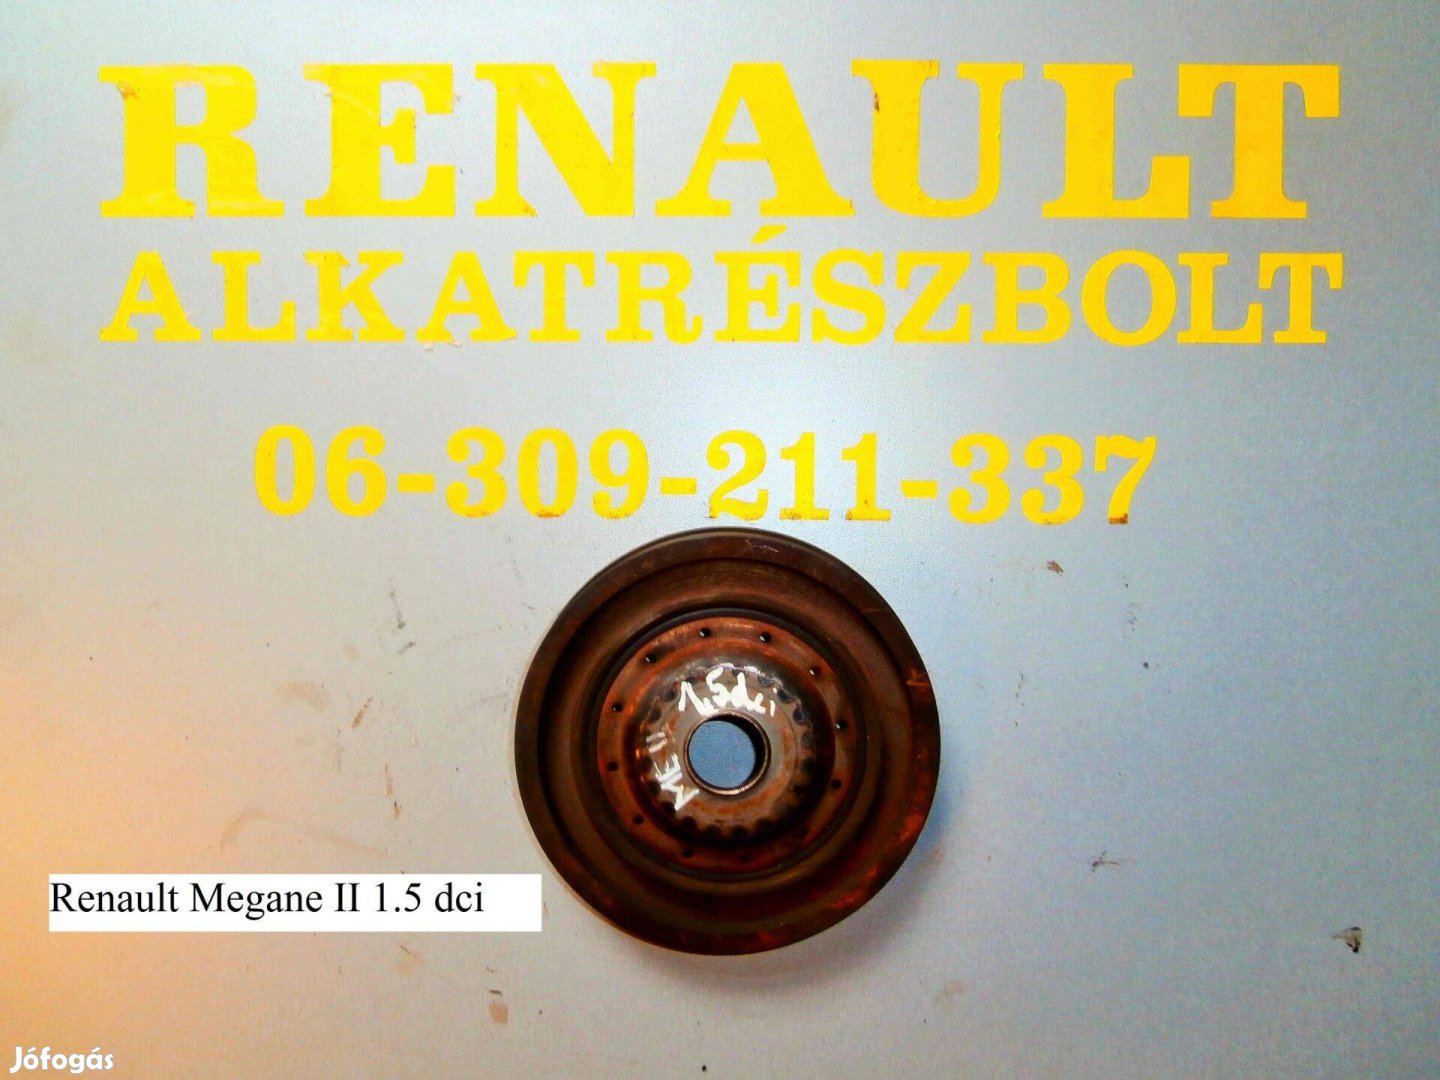 Renault Megane II 1.5 dci főtengely ékszíjtárcsa